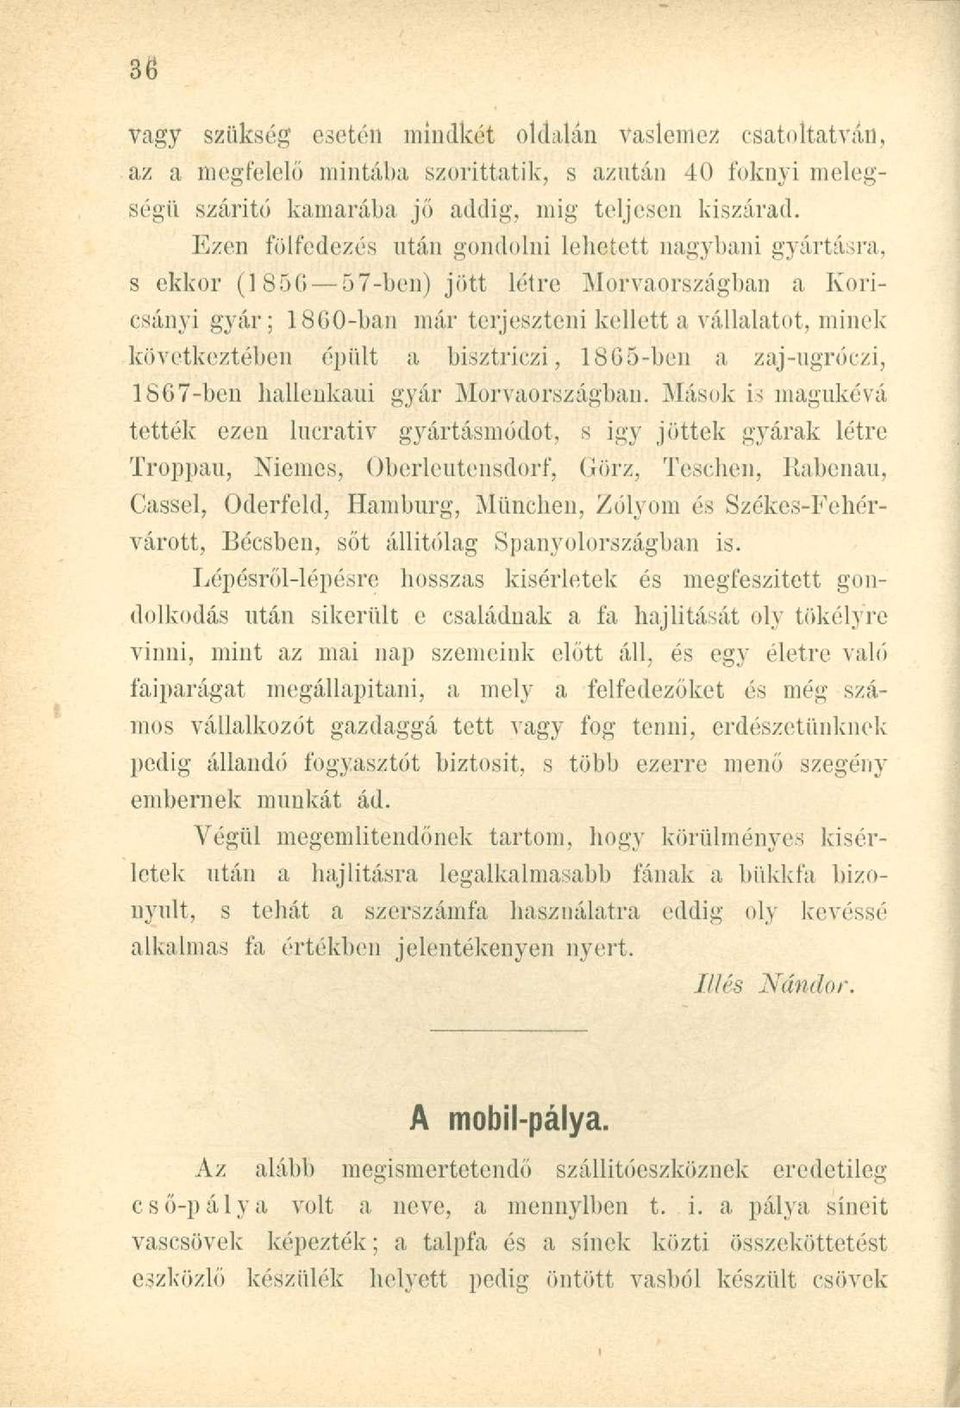 a bisztriczi, 1865-ben a zaj-ugróezi, 1867-ben hallenkaui gyár Morvaországban.